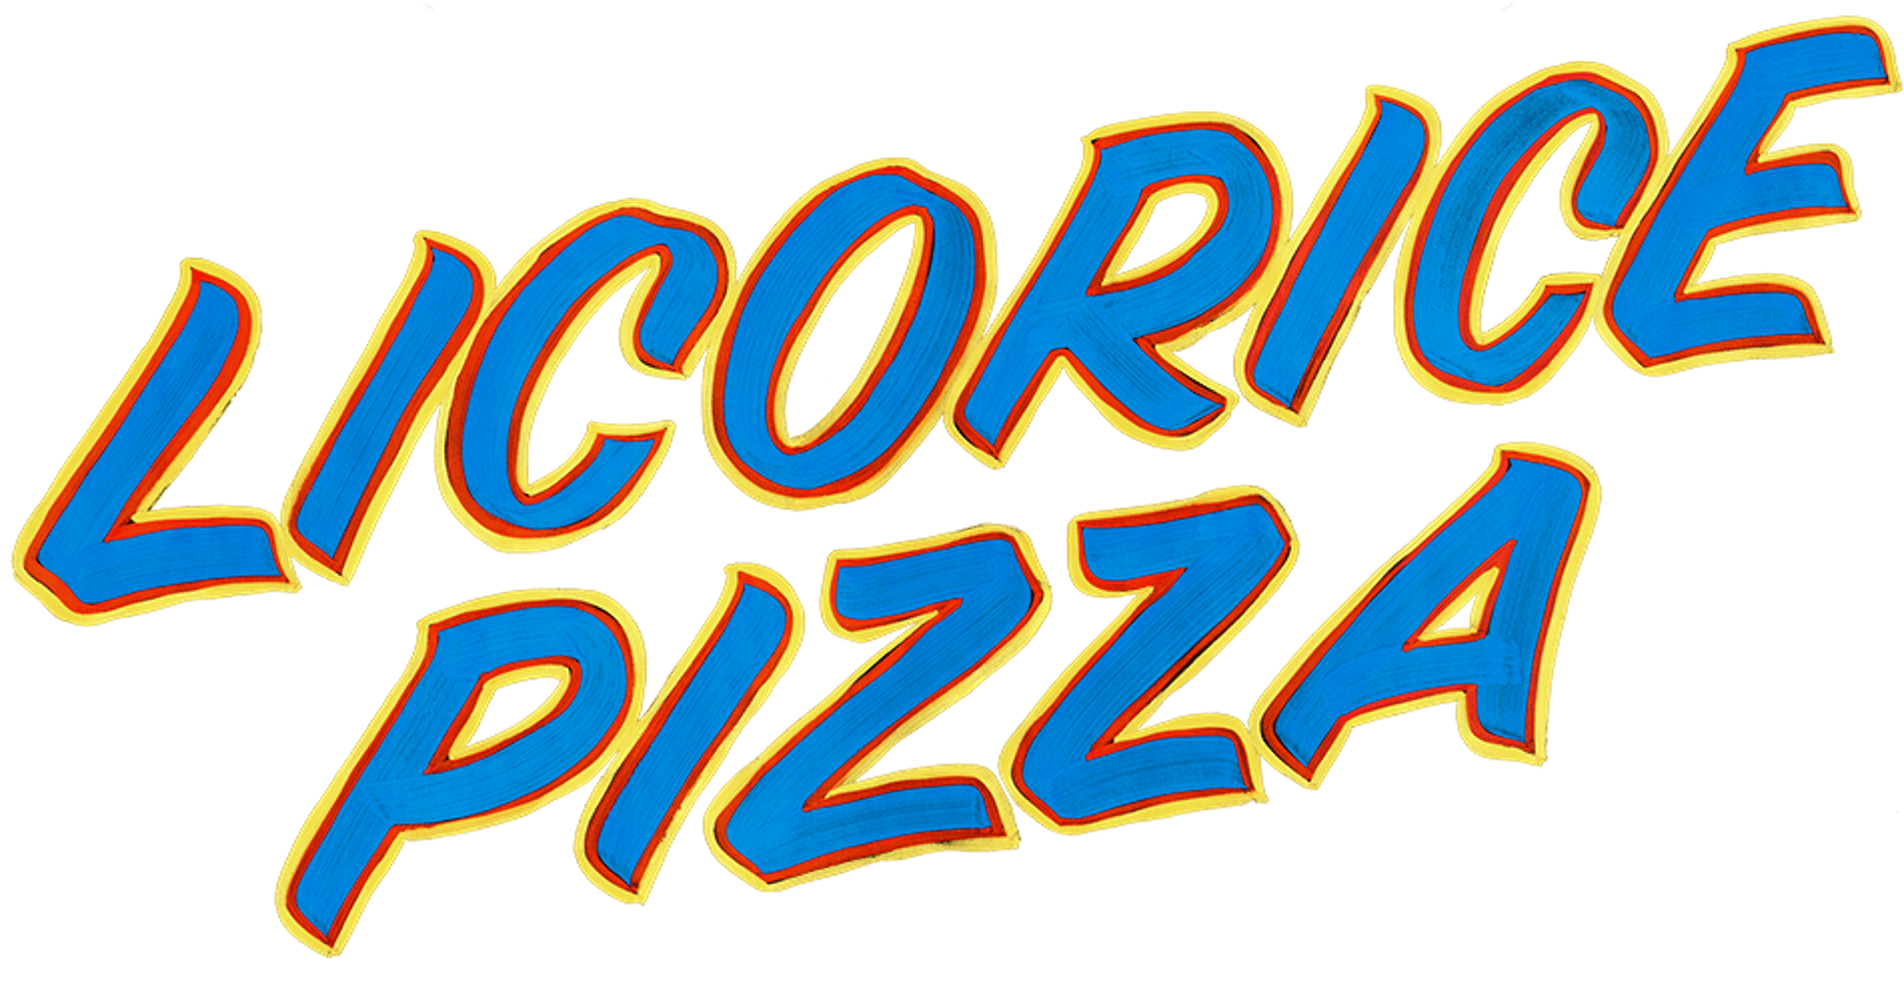 Licorice Pizza logo